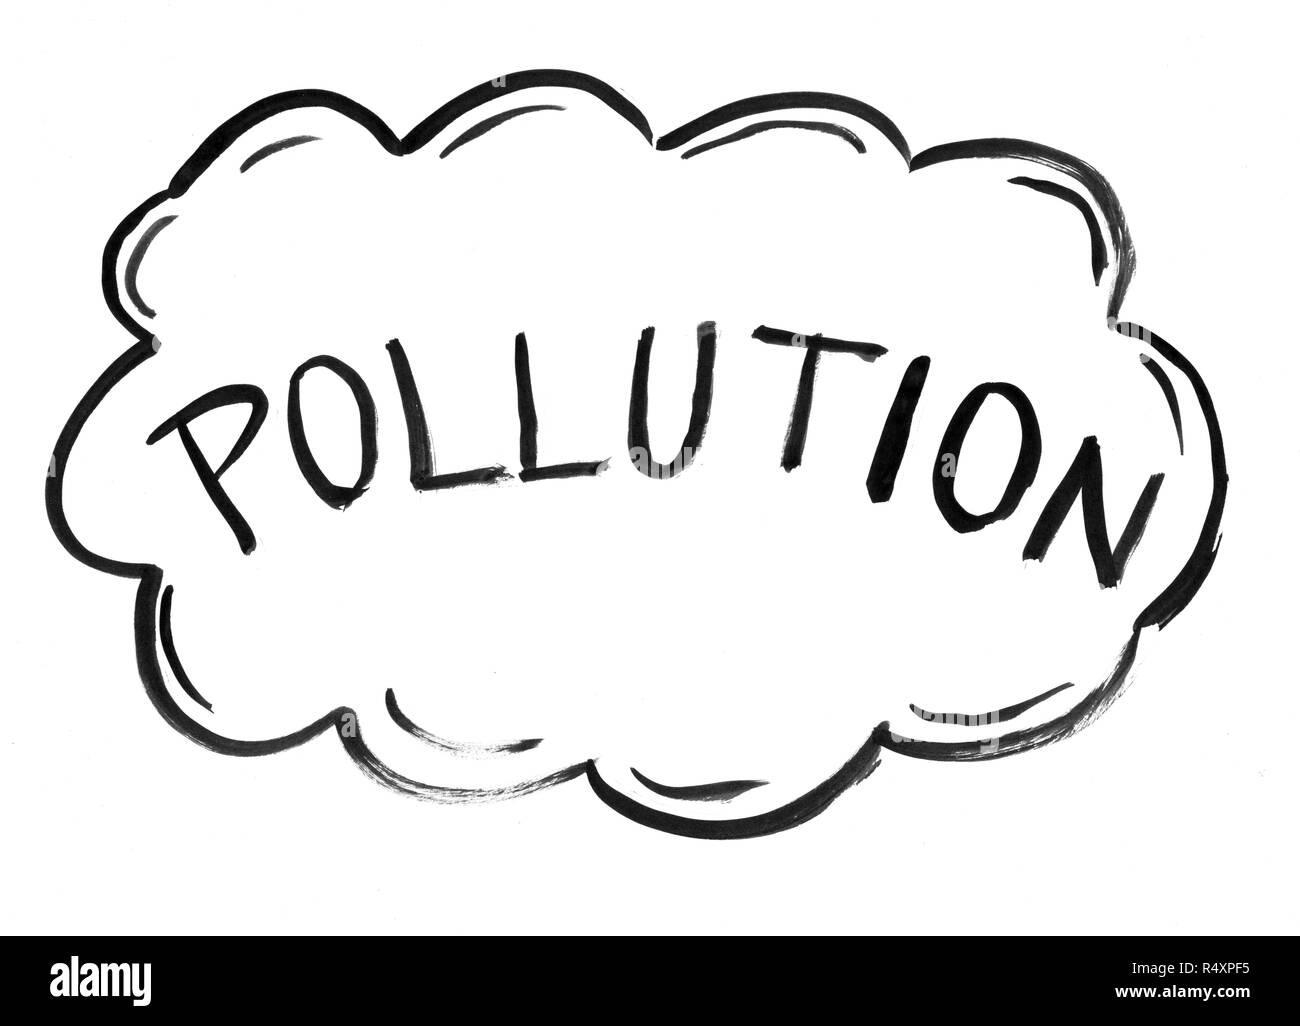 Inchiostro nero disegno a mano di Inquinamento atmosferico Cloud Foto Stock